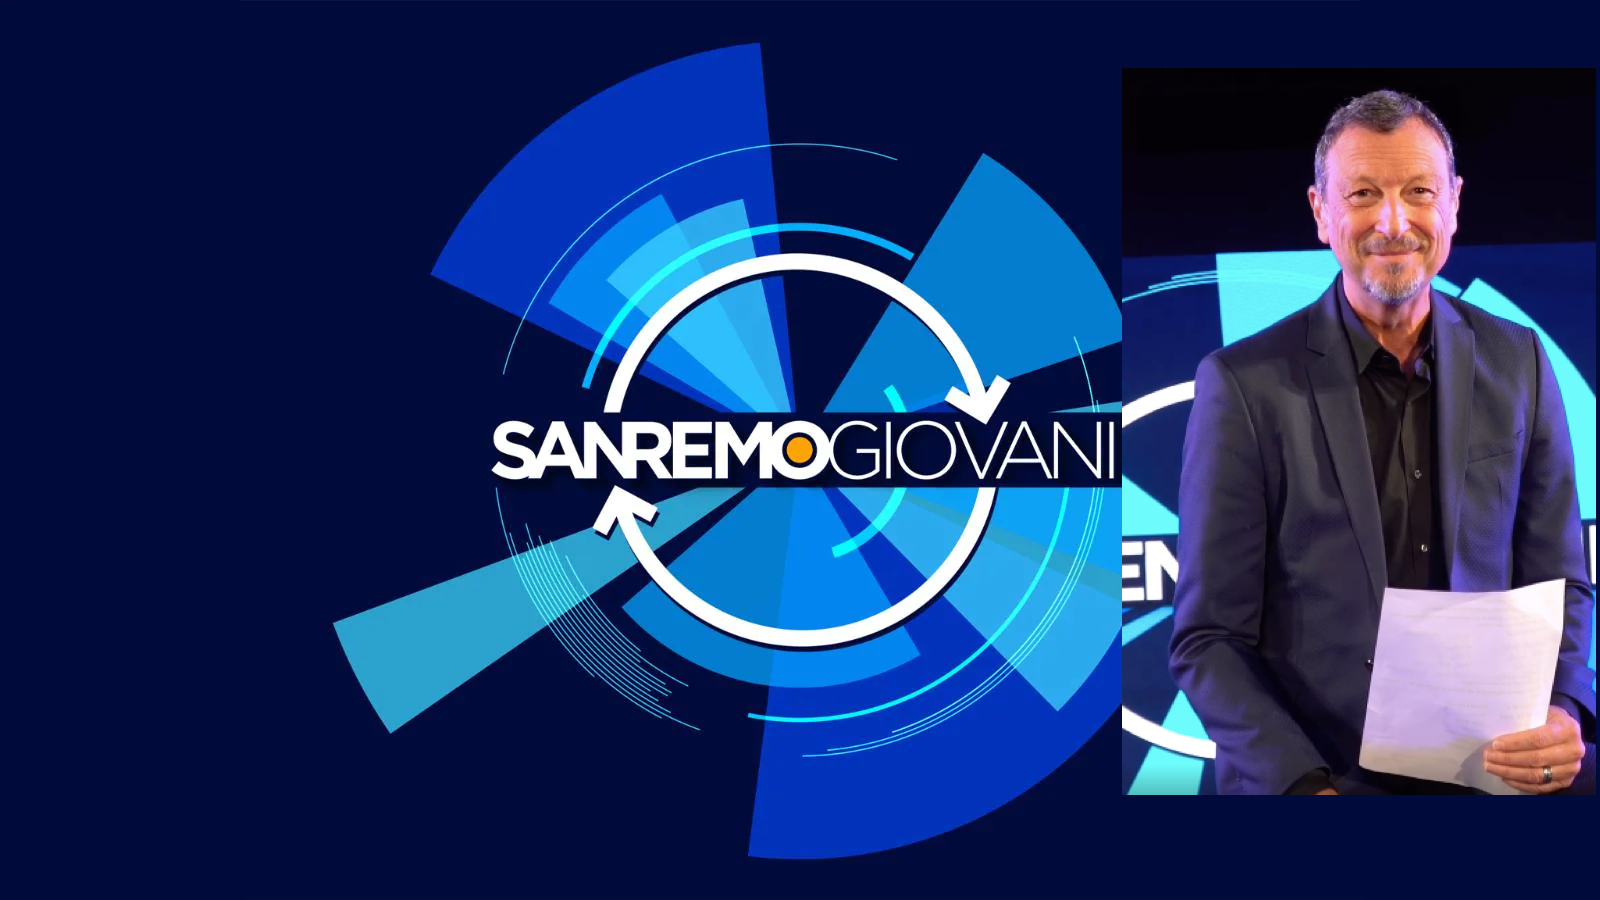 Sanremo Giovani, selezionati i quattro artisti di Area Sanremo